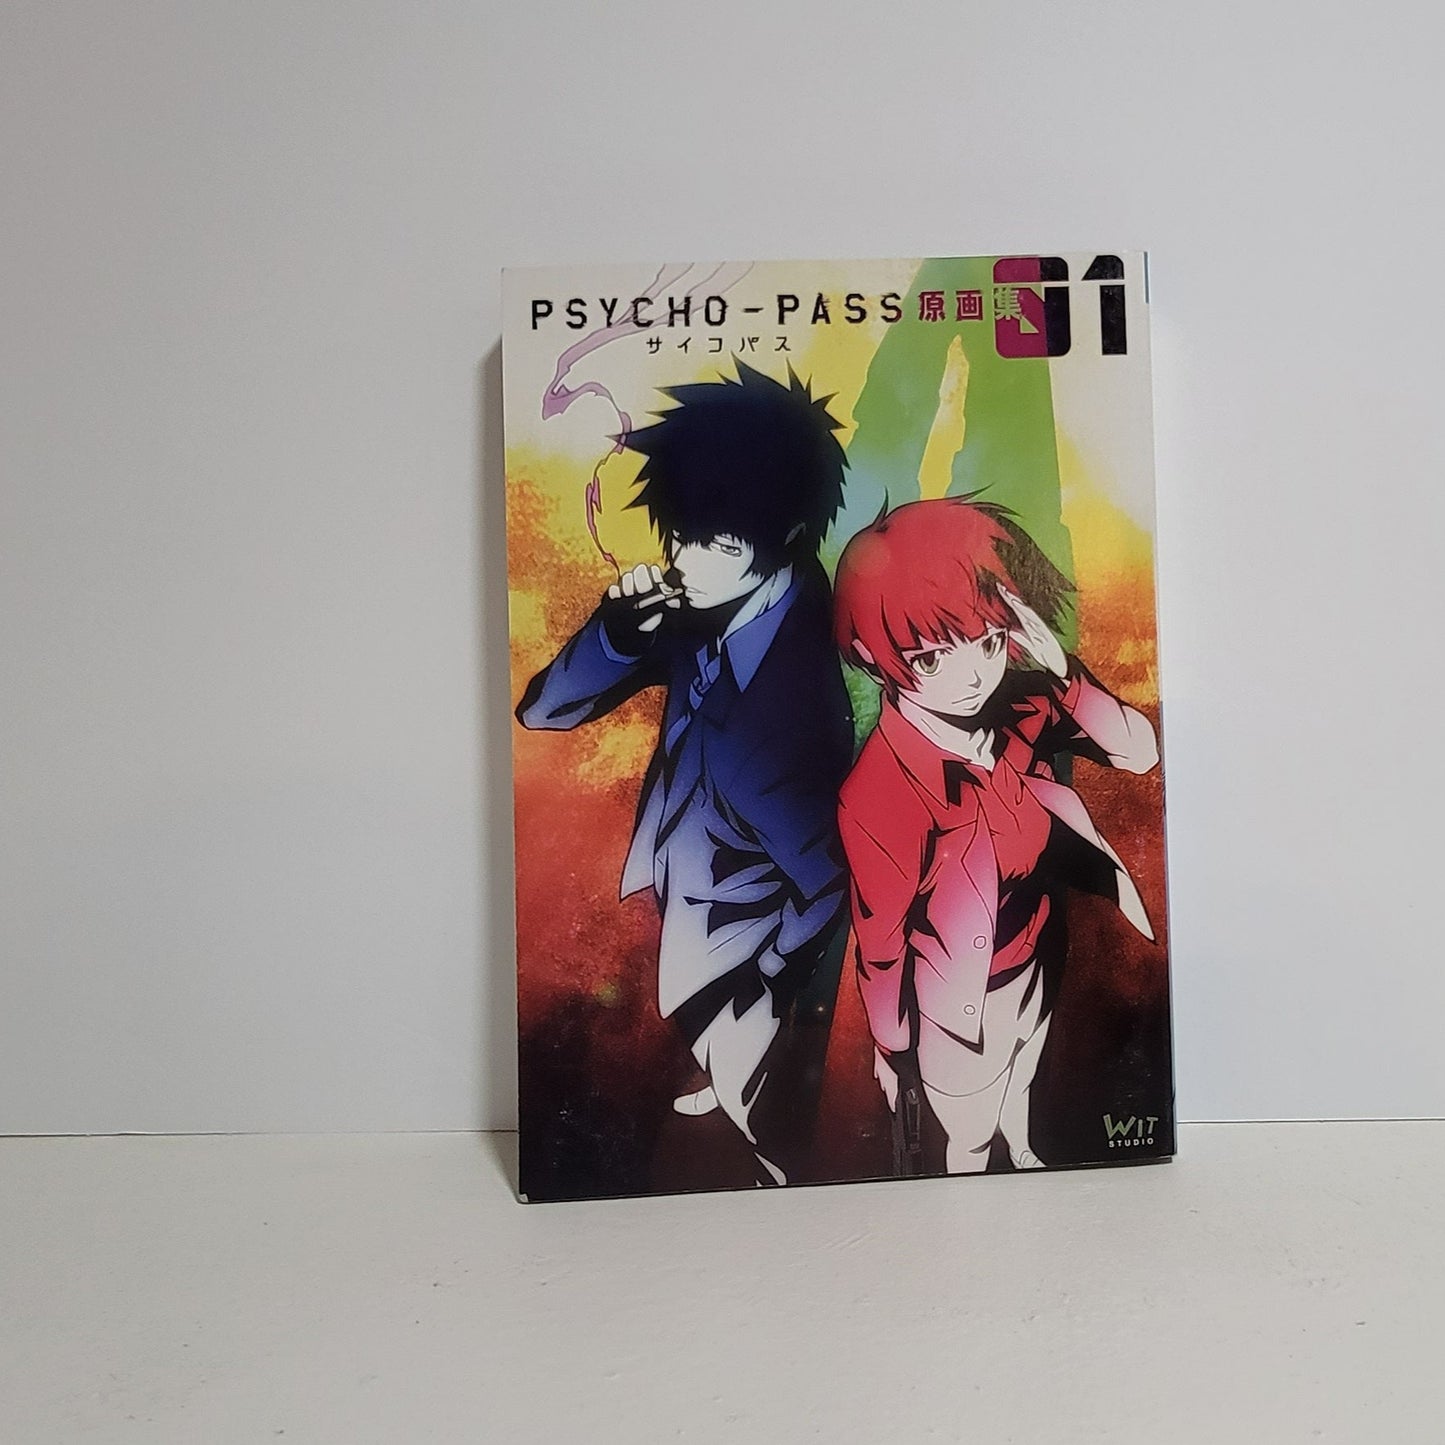 Psycho-Pass Art Book